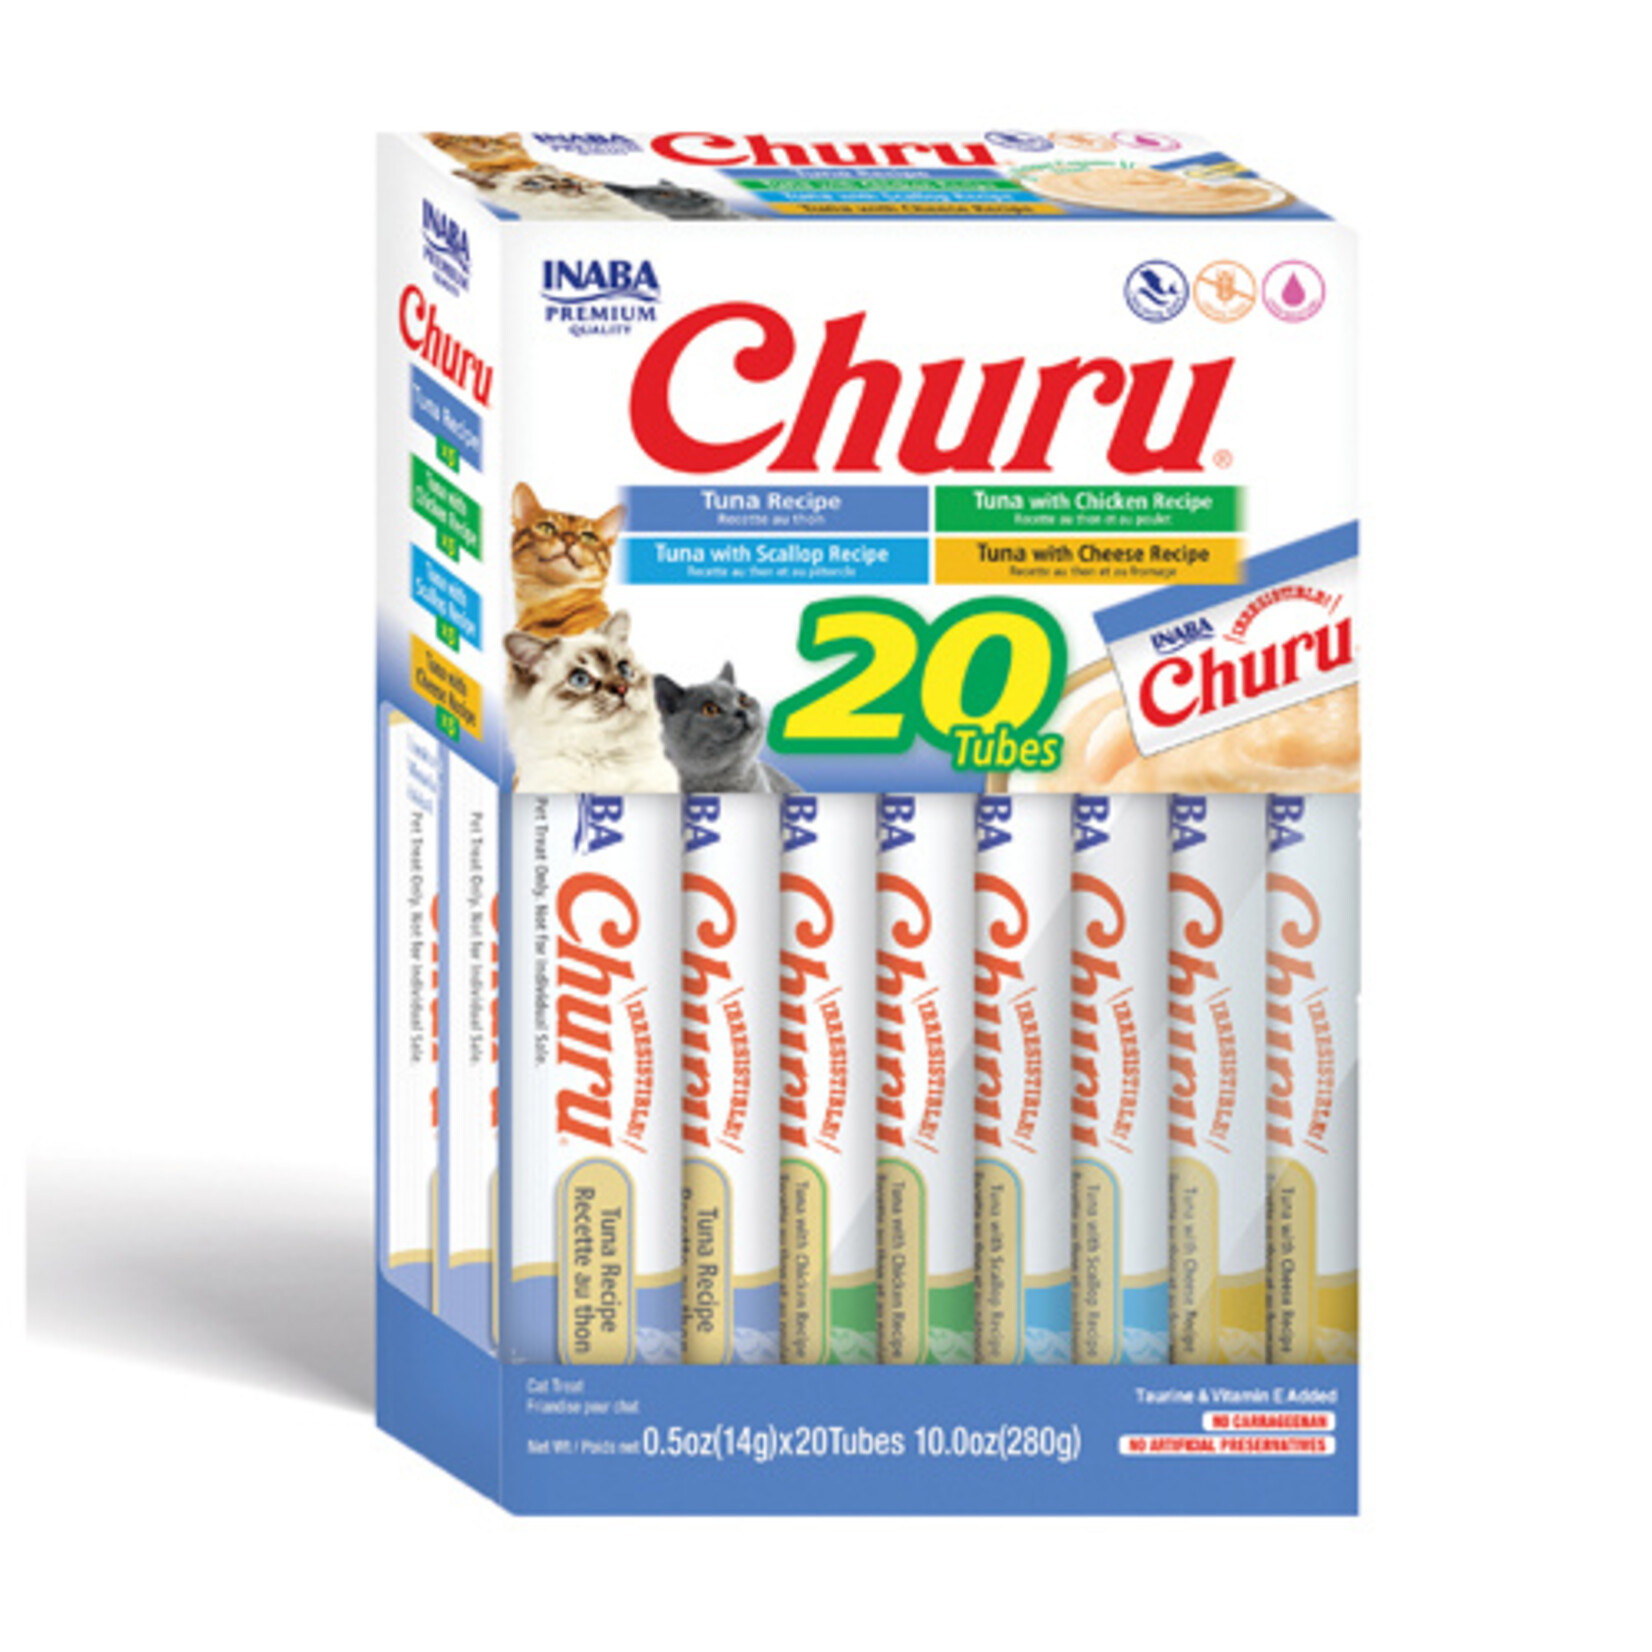 INABA Inaba Churu Puree Tuna Varieties Box of 20 Tubes (280g)